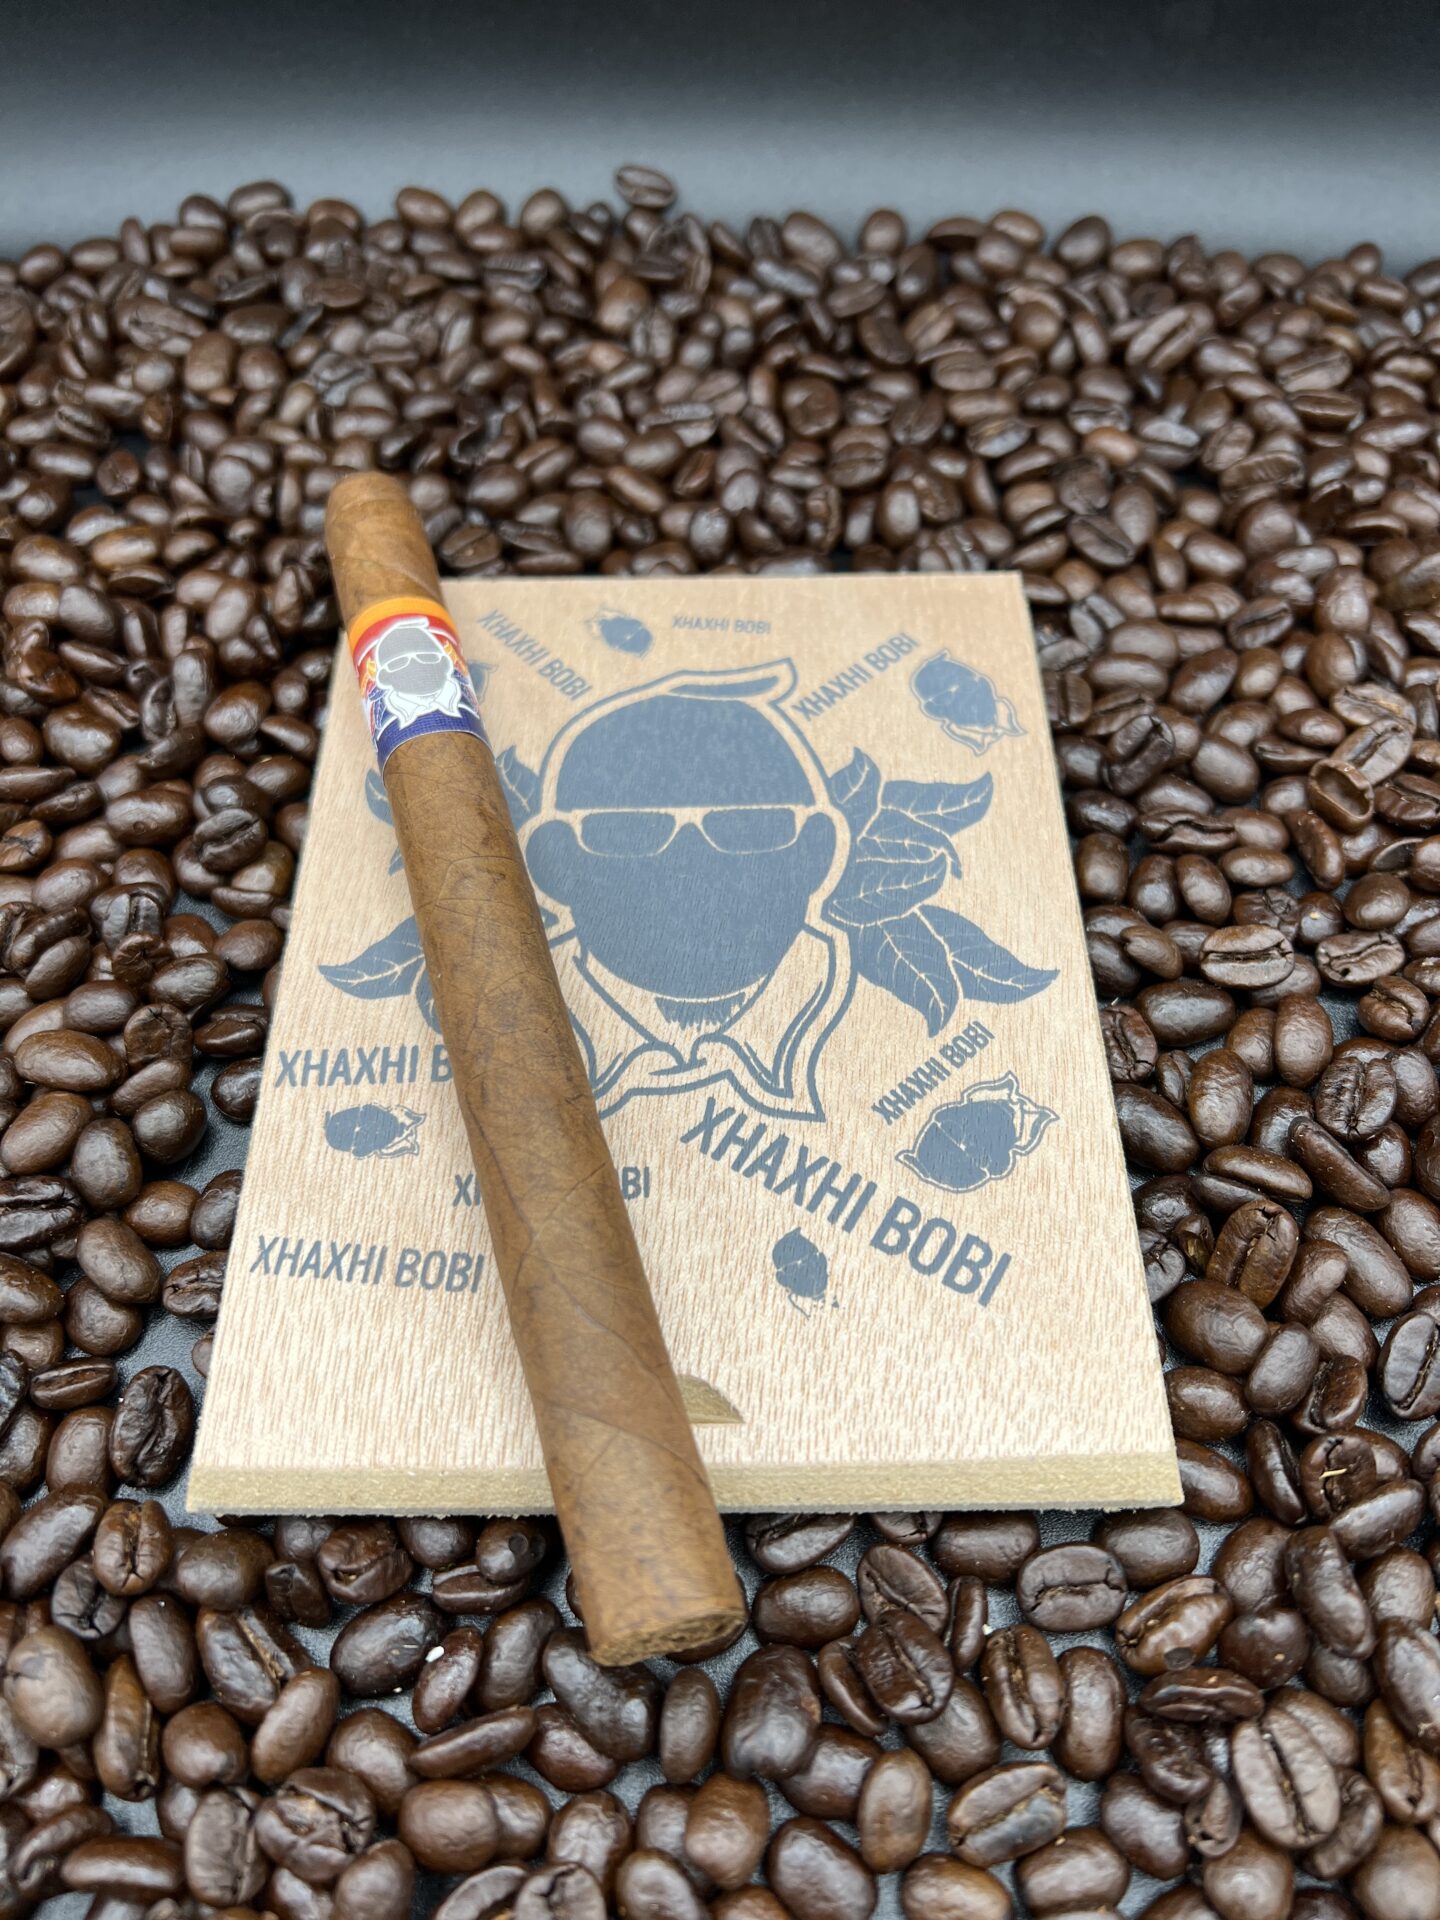 Xhaxhi Bobi - Grey Lancero cigars supplied by Sir Louis Cigars